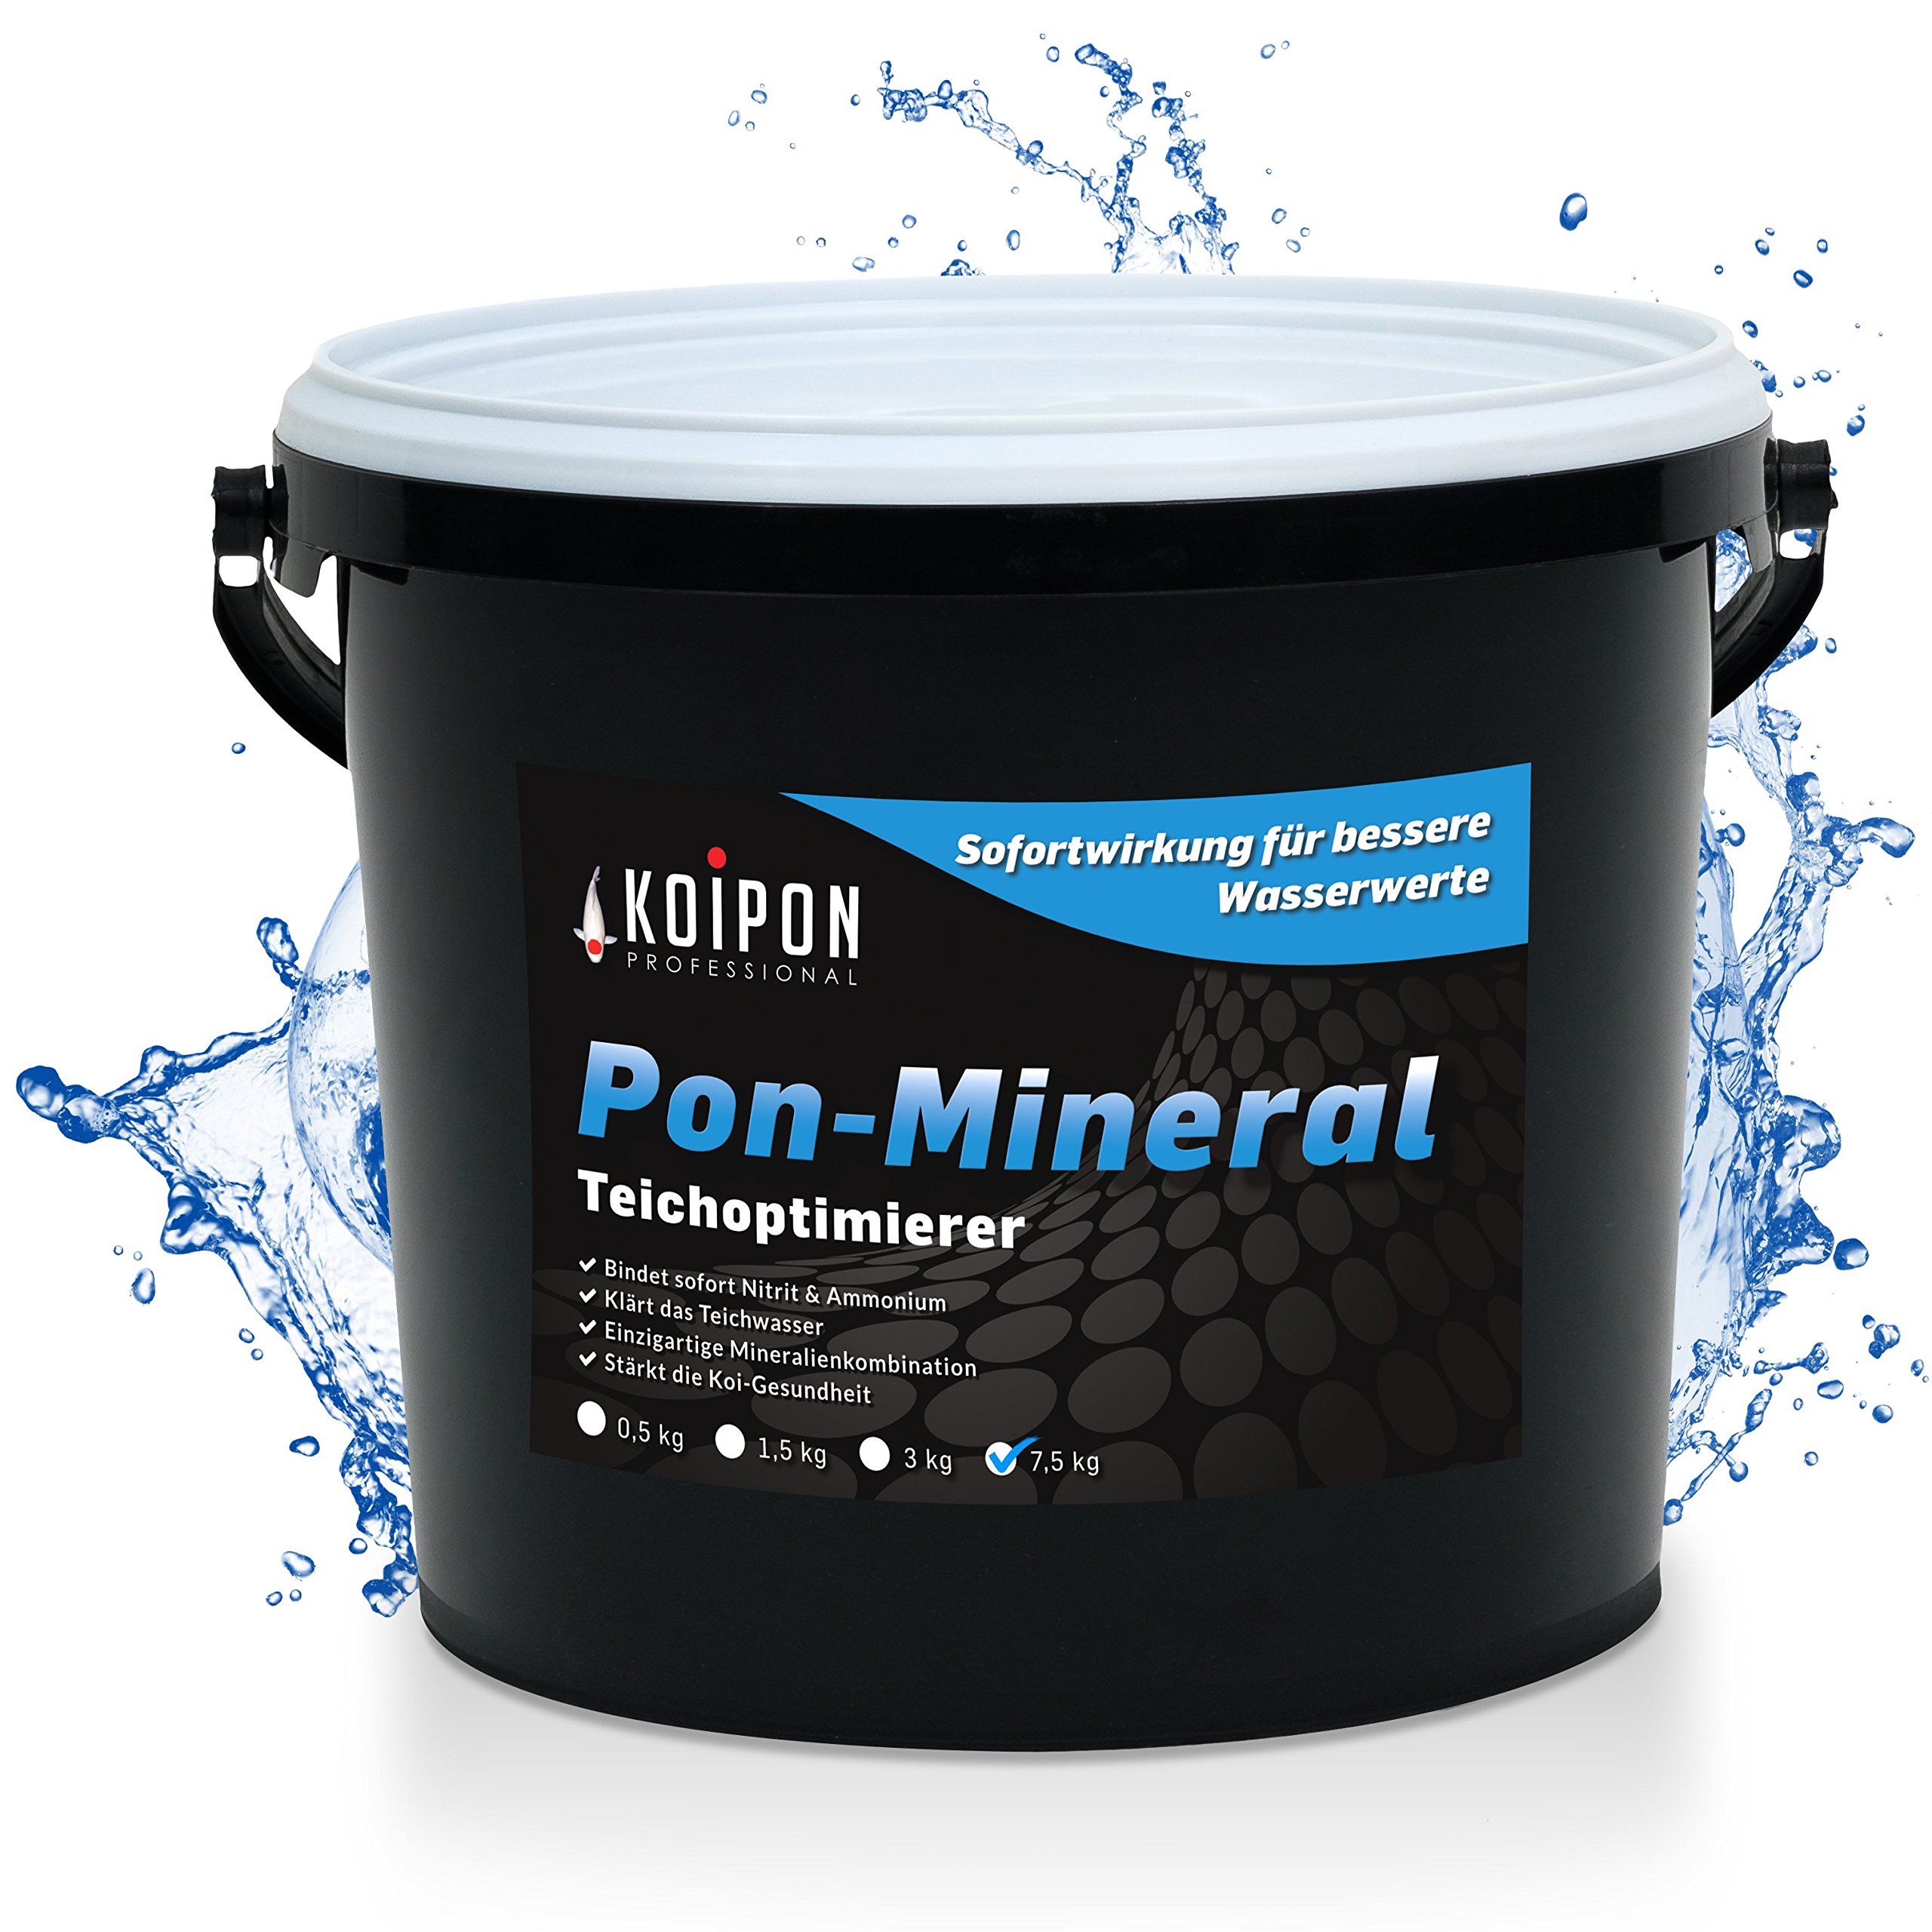 KOIPON Pon-Mineral 7,5 kgTeichwasseraufbereiter zur Teichpflege mit hochwertigen Teichmineralien und Nitritsenker zur Teichreinigung